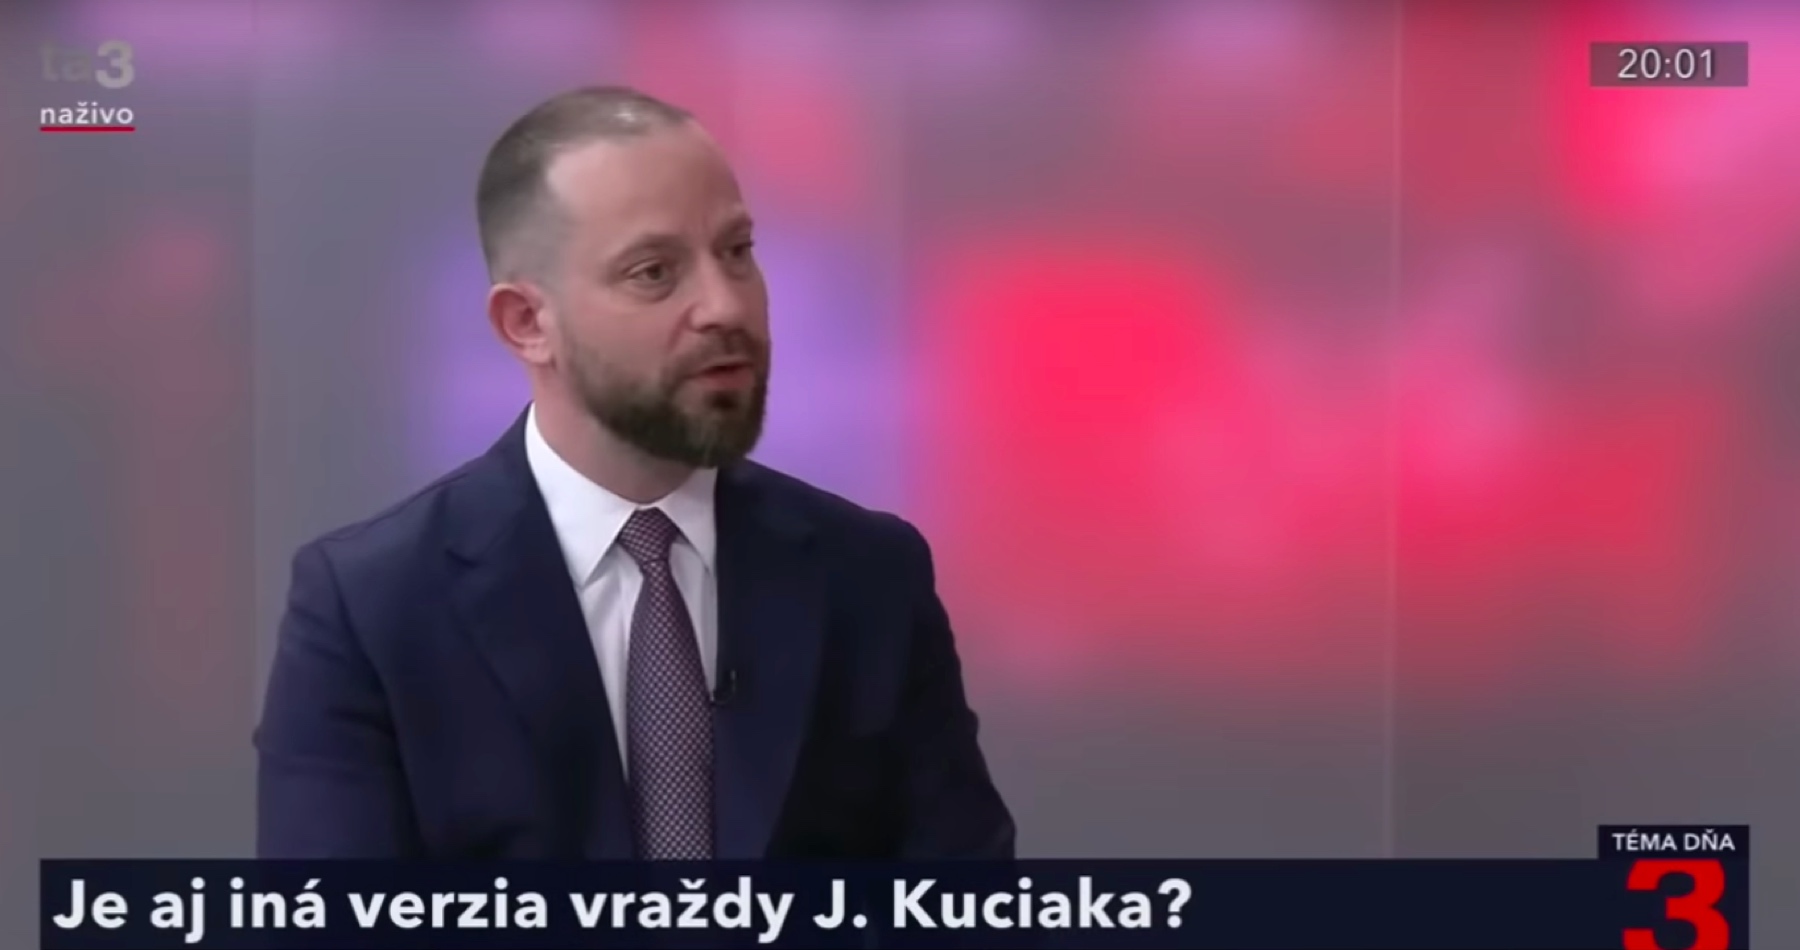 VIDEO: Existujú dôkazy o inej verzii vraždy Kuciaka. Pochybný kľúčový svedok Andruskó mal prepojenie na kriminálne skupiny, o ktorých novinár písal a ktoré sa ho snažili zlikvidovať. Advokát Para načrtol inú verziu vraždy a tvrdí, že Lipšic ovplyvňoval dokazovanie takým spôsobom, aby sa vyšetrovala len jedna verzia 